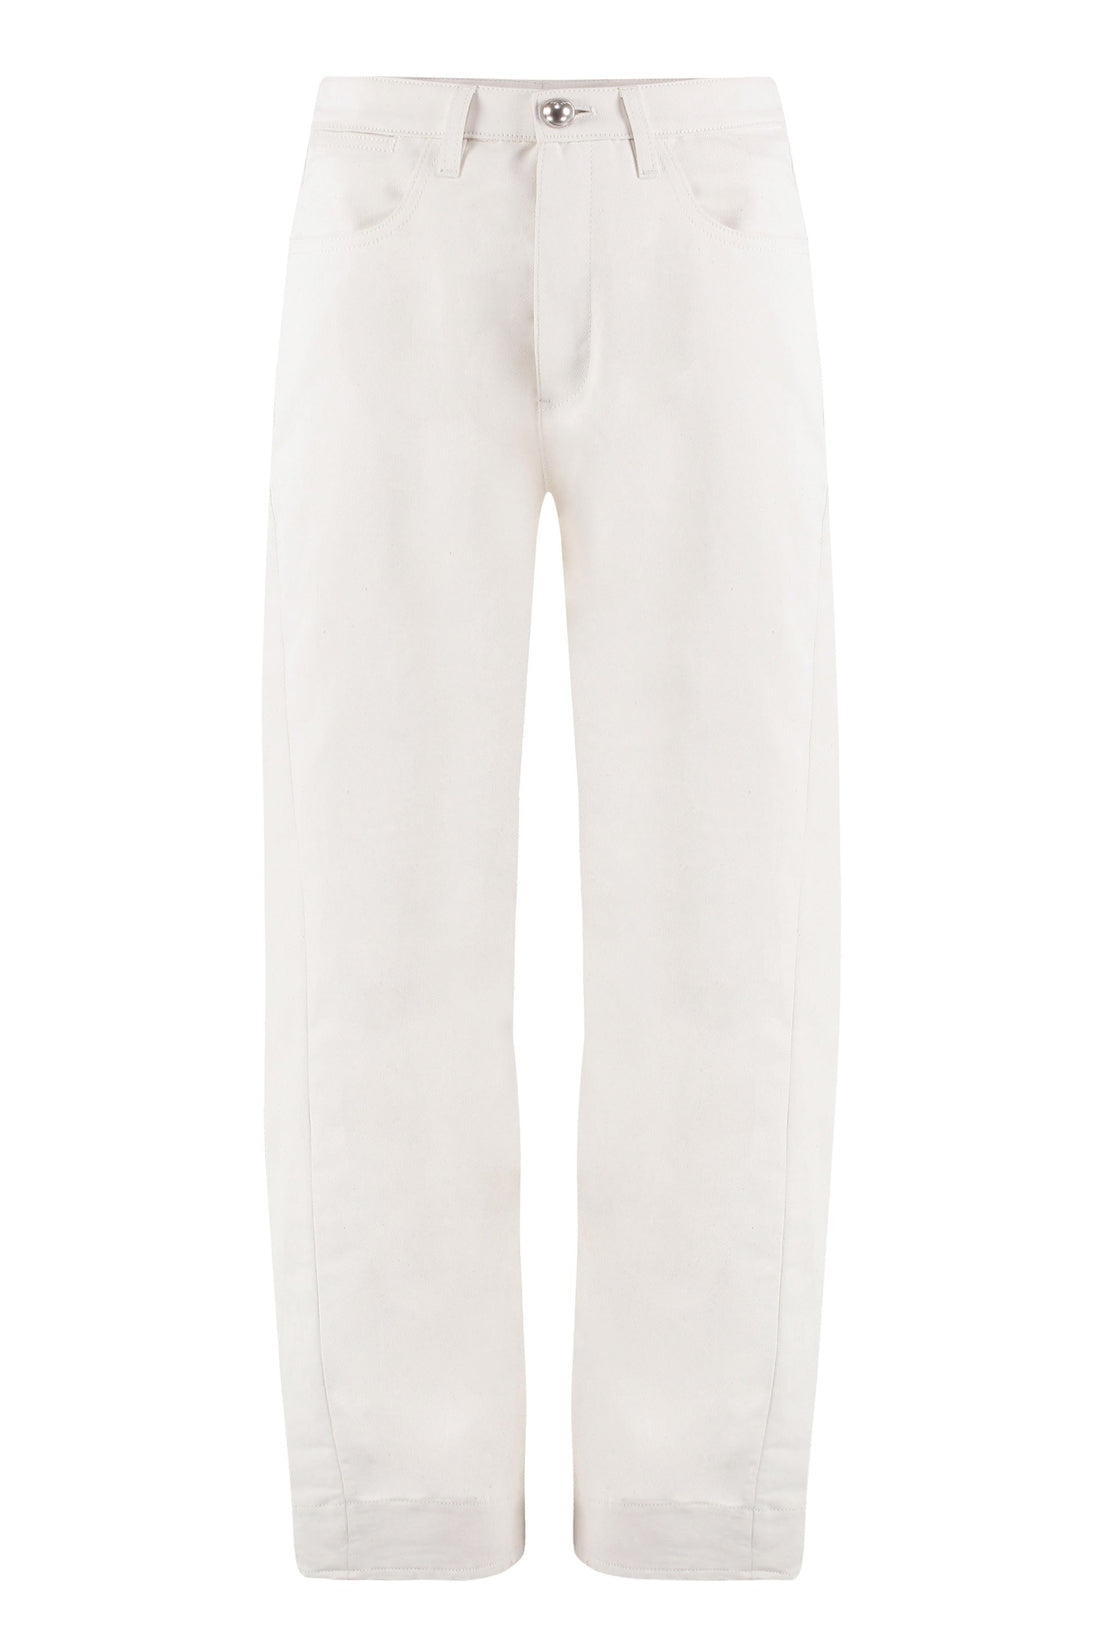 Jil Sander-OUTLET-SALE-Cotton-linen trousers-ARCHIVIST